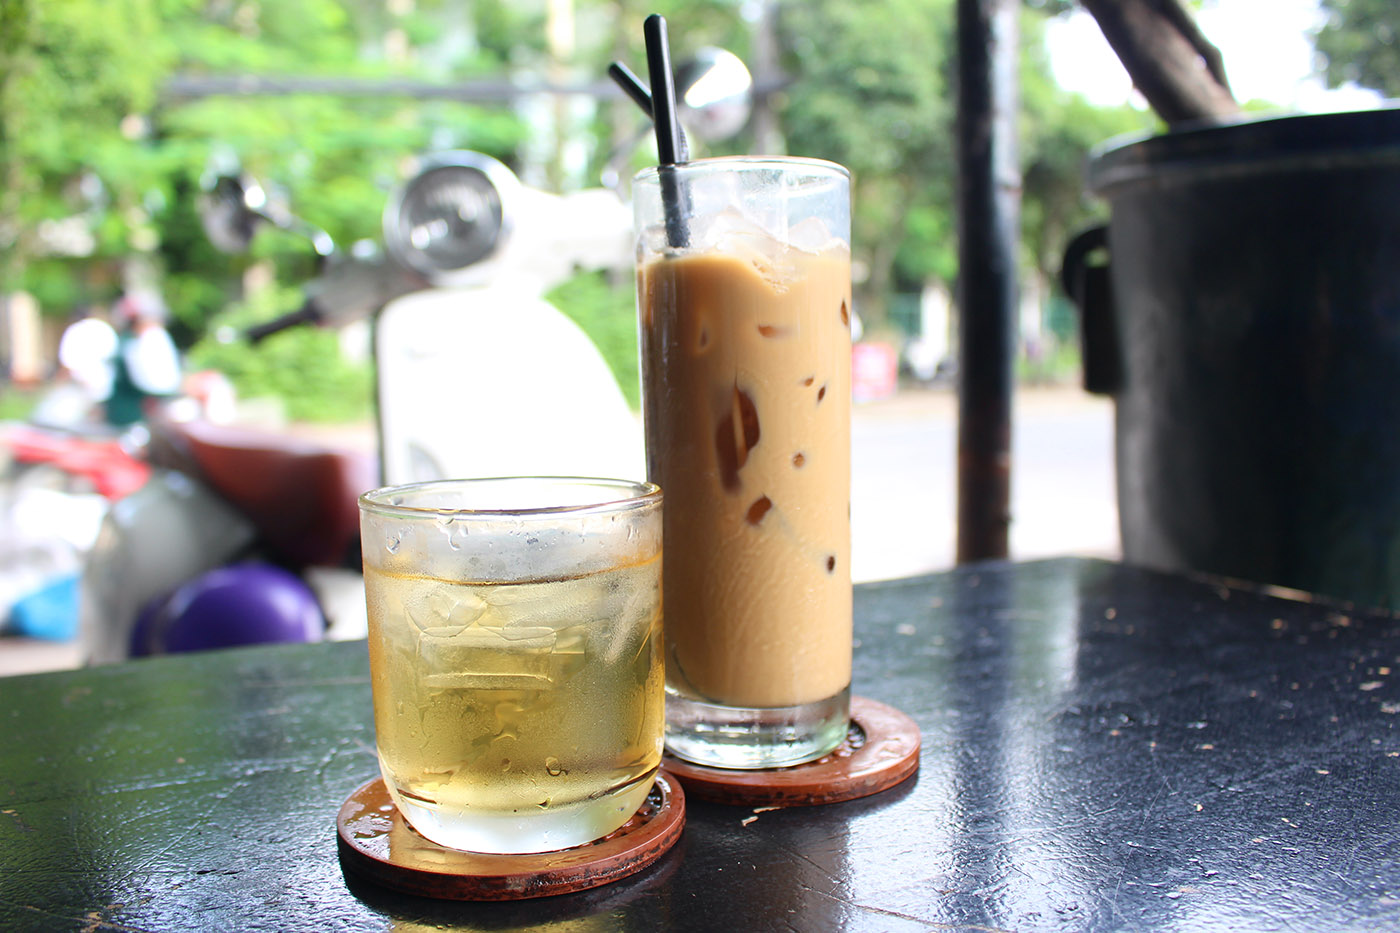 Ca Phe Sua Da - A guide to Vietnamese coffee